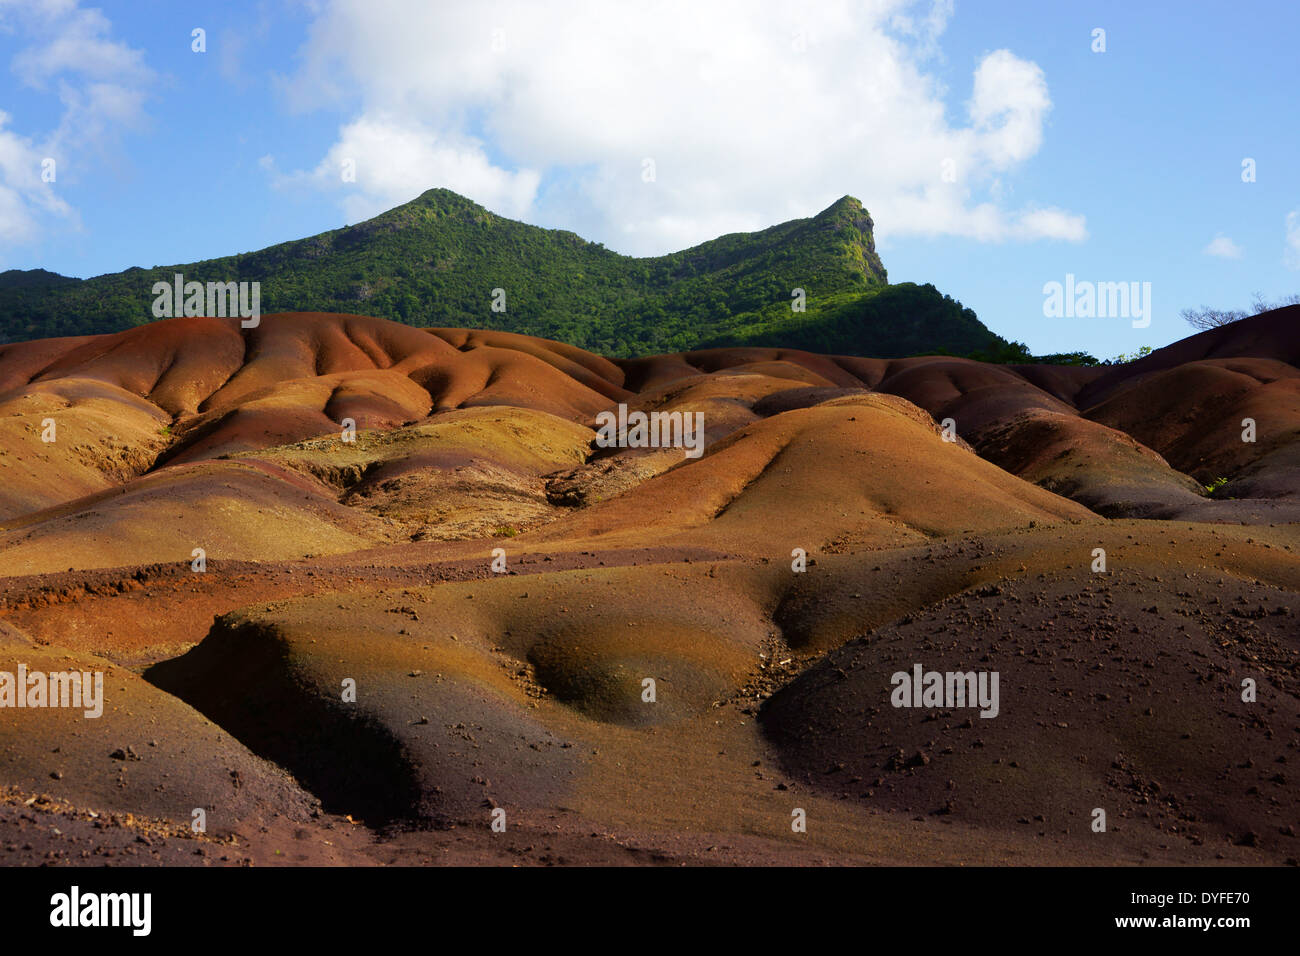 Chamarel terre colorate, Mauritius Foto Stock